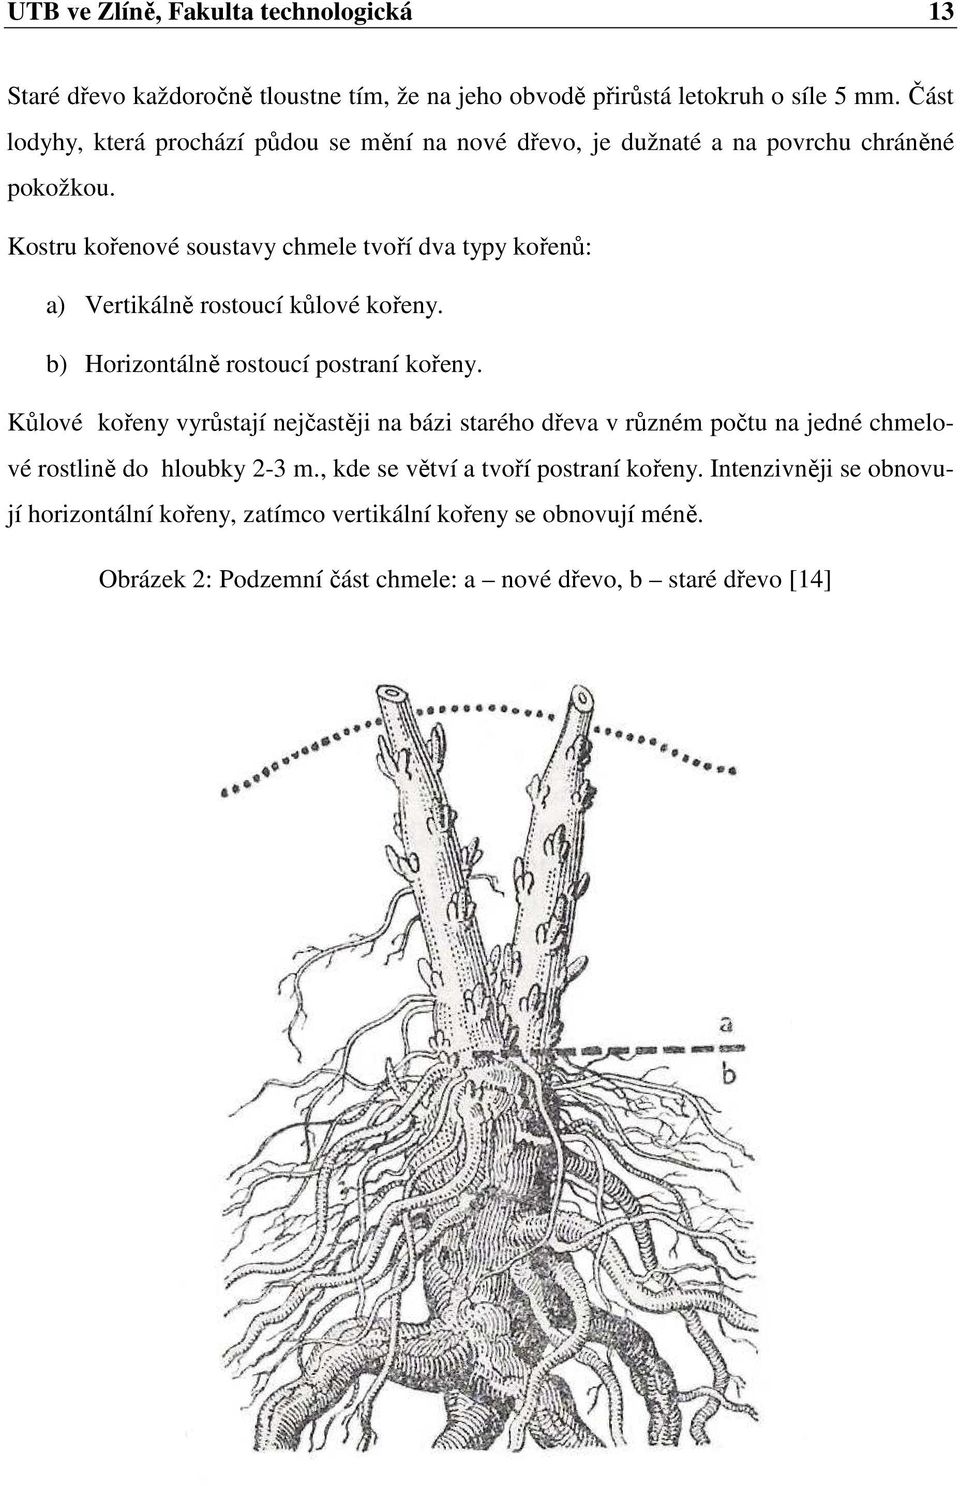 Kostru kořenové soustavy chmele tvoří dva typy kořenů: a) Vertikálně rostoucí kůlové kořeny. b) Horizontálně rostoucí postraní kořeny.